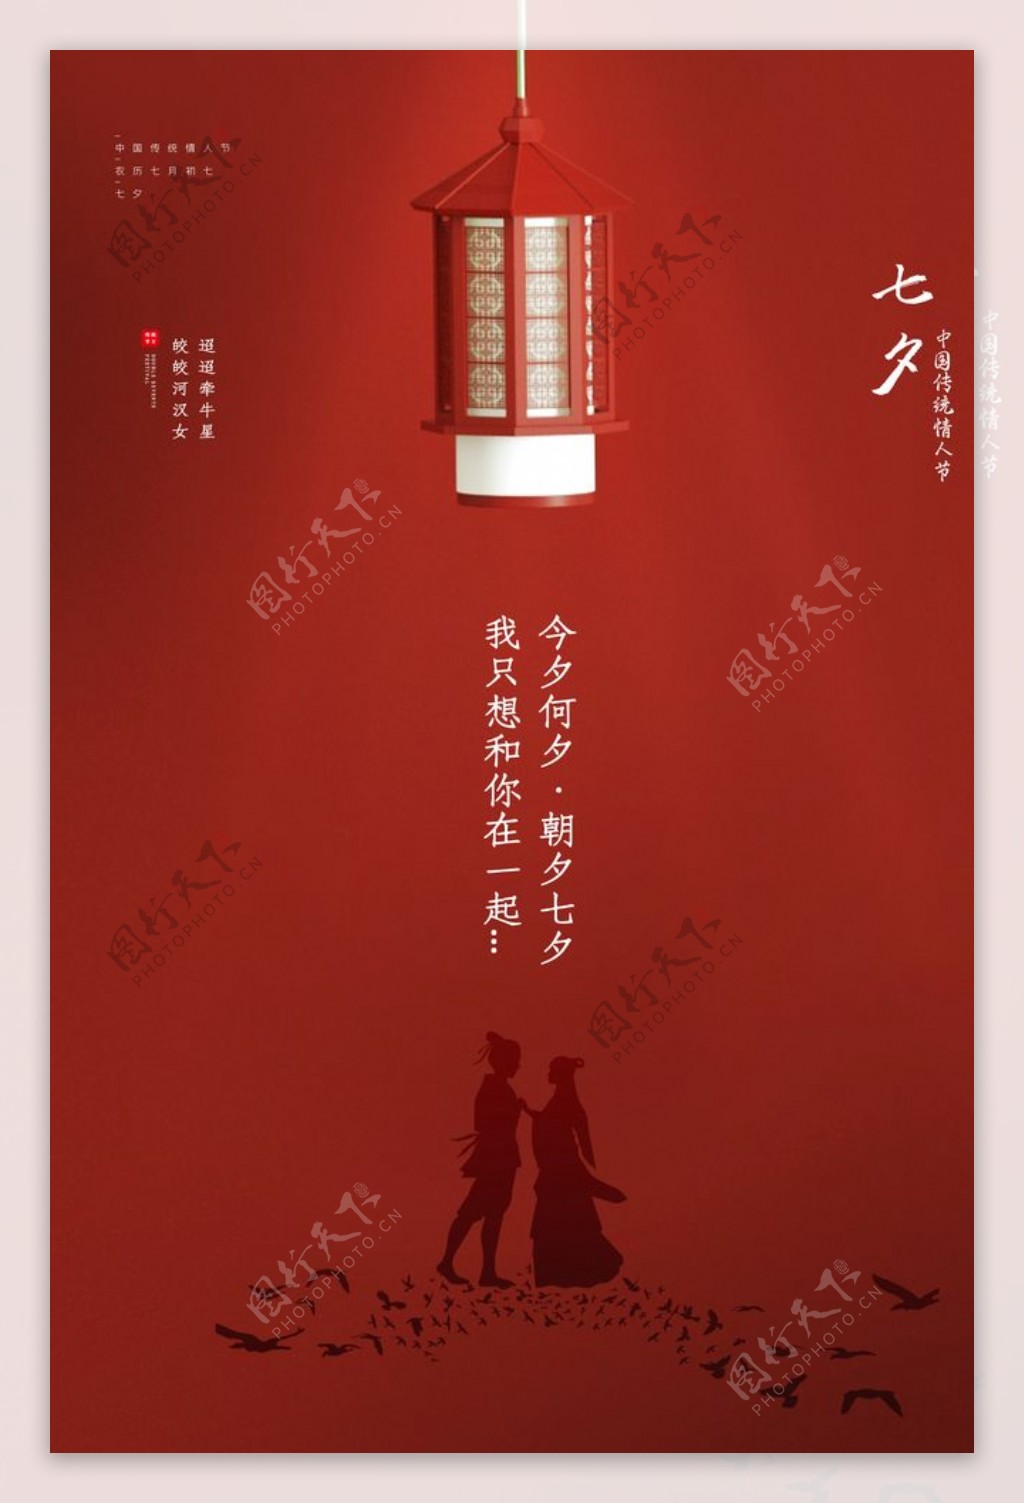 七夕节日促销活动宣传海报素材